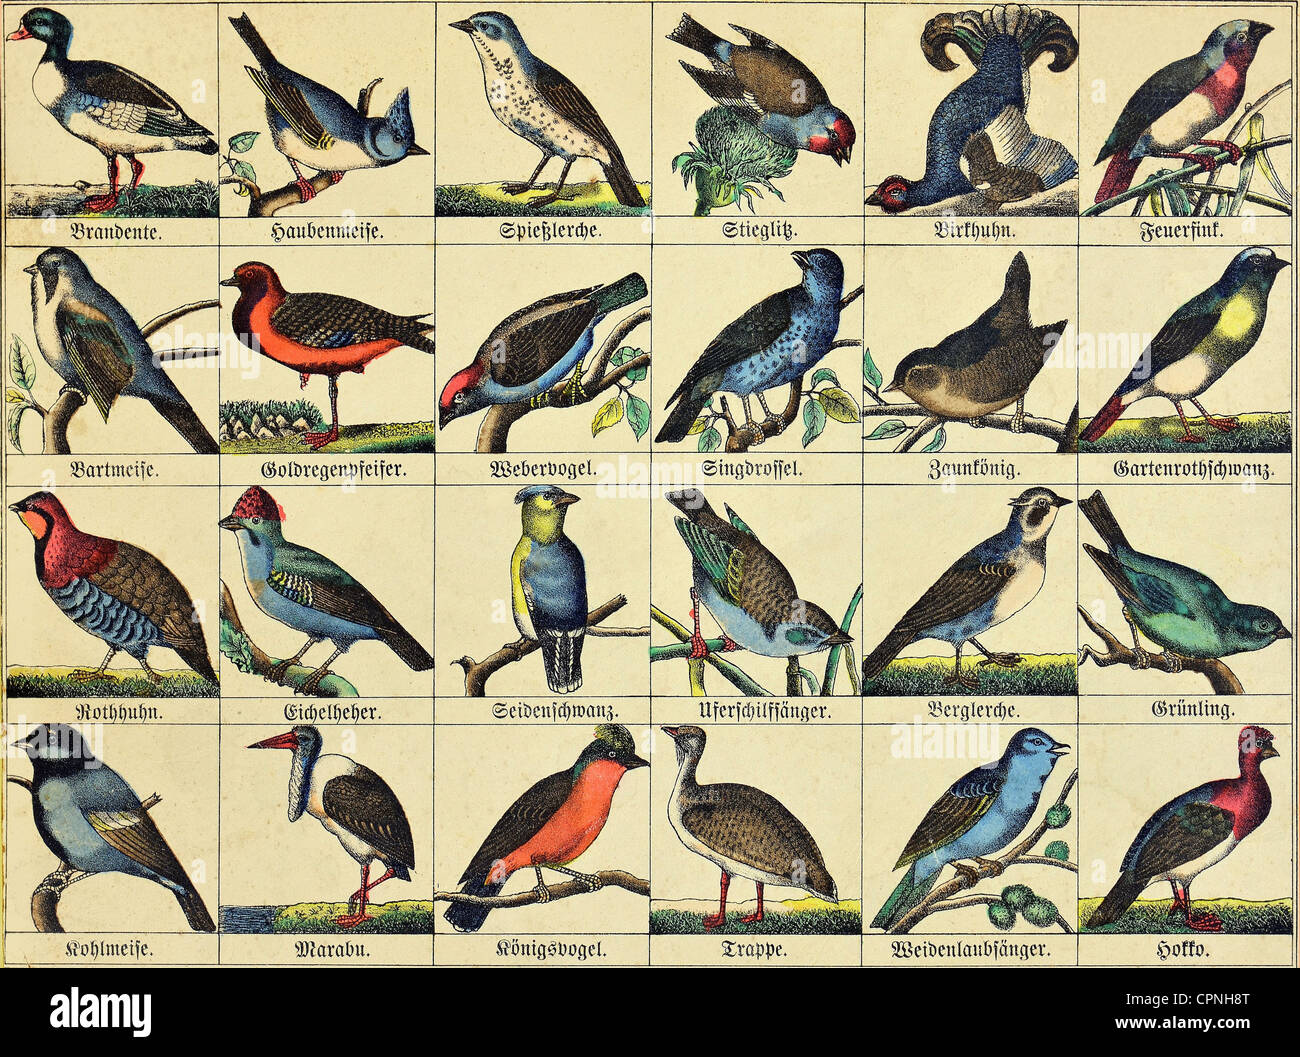 zoologia / animali, uccelli, specie di uccelli locali ed esotiche, carta illustrata, Germania, circa 1865, diritti aggiuntivi-clearences-non disponibile Foto Stock